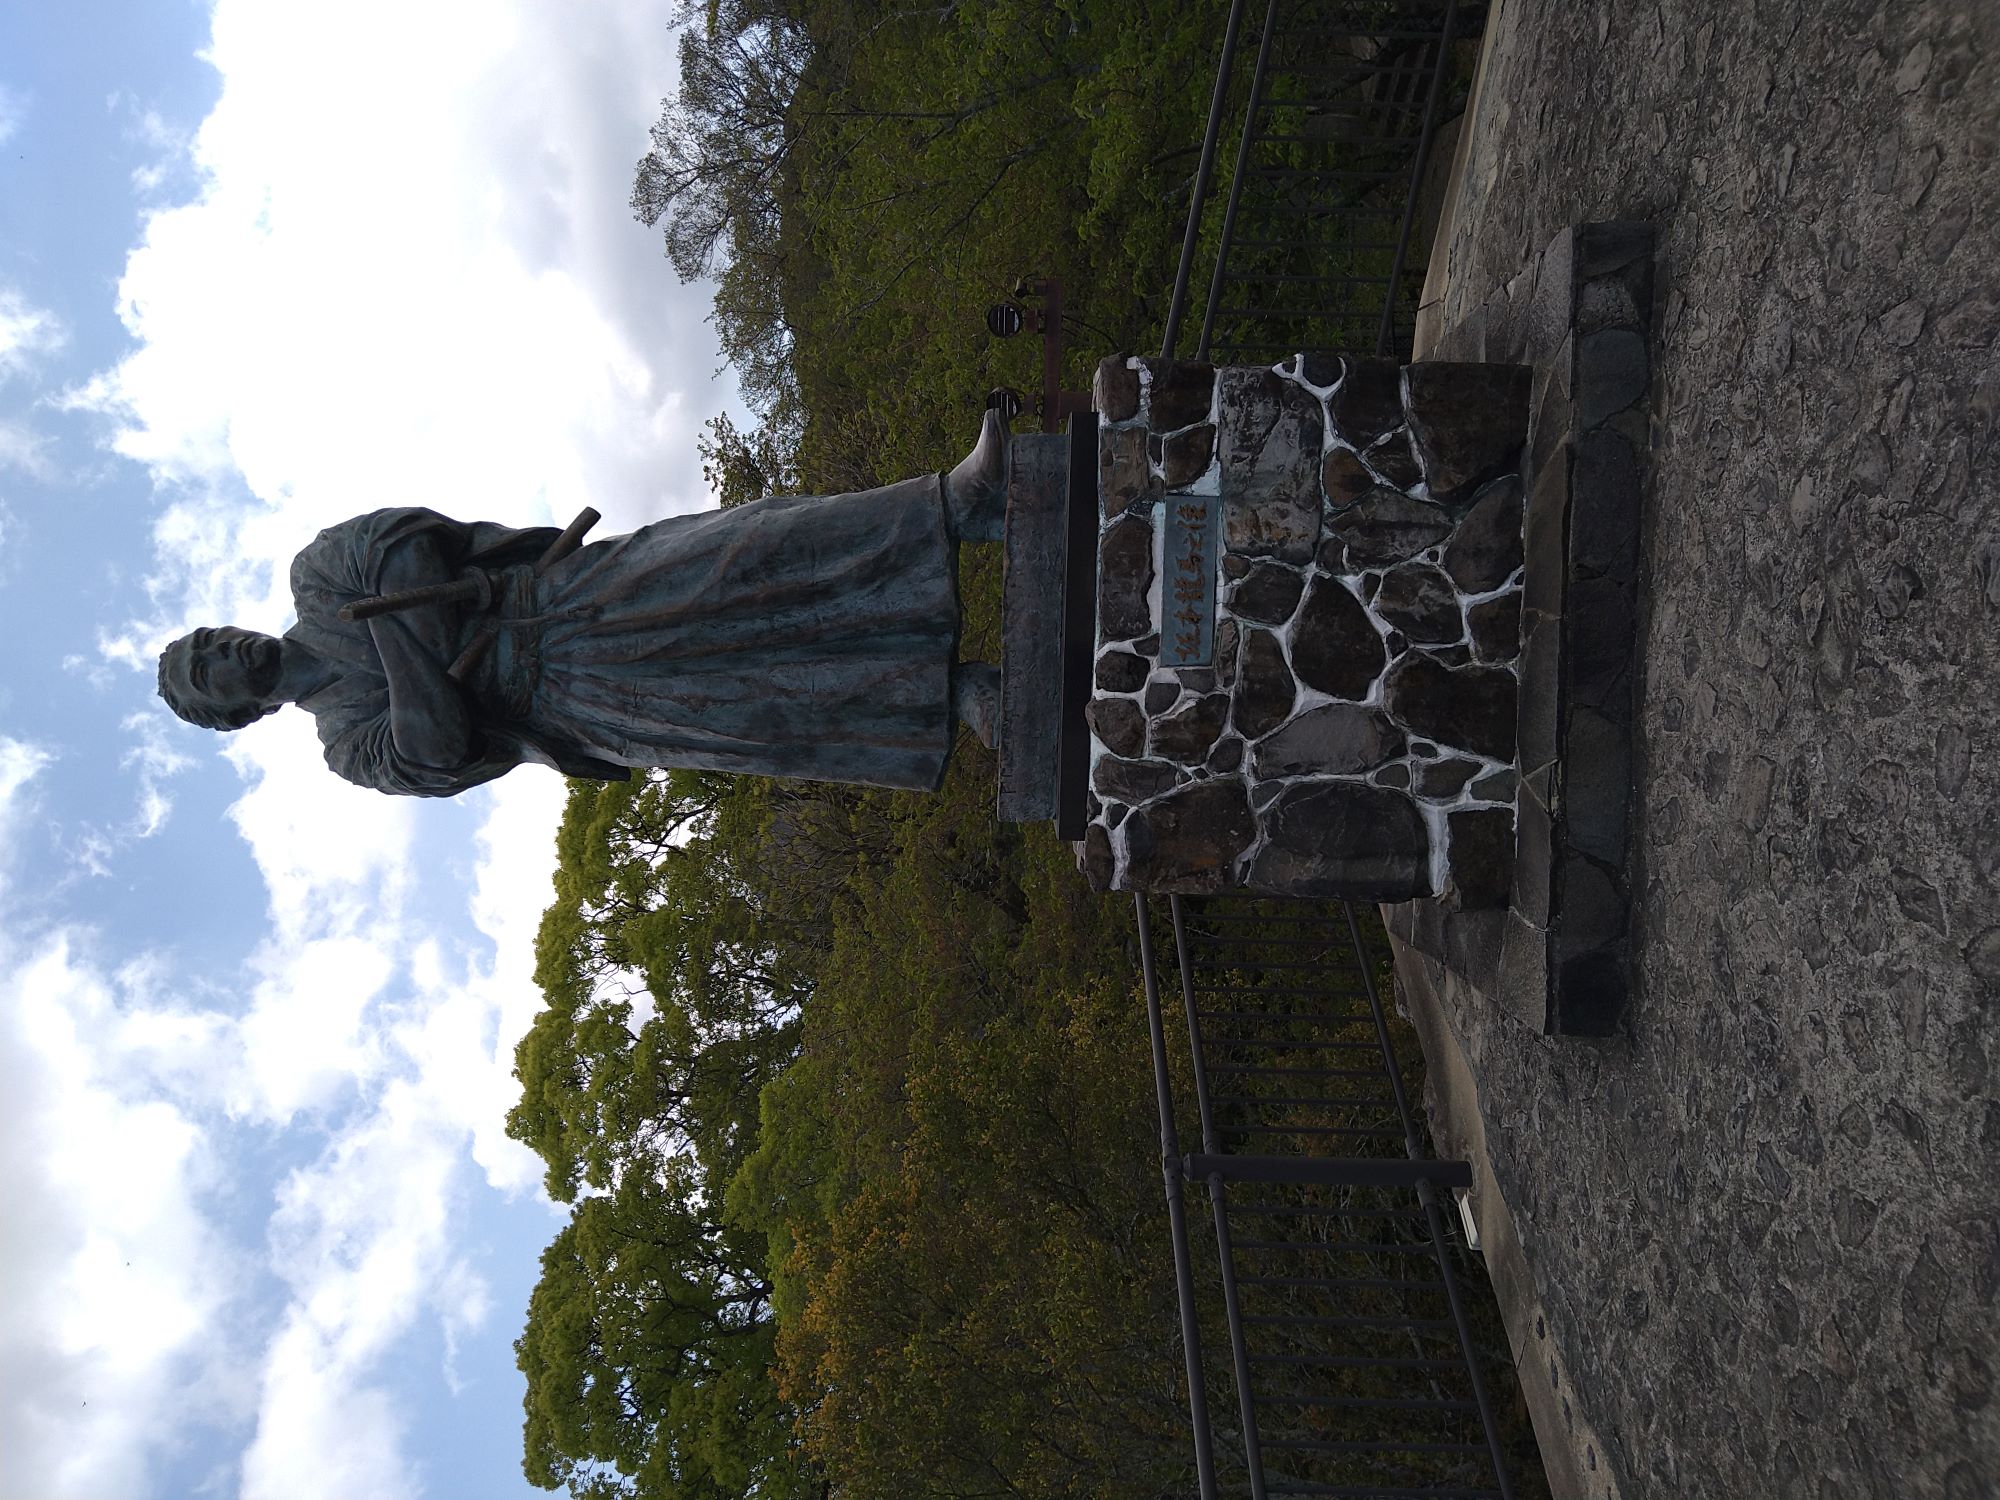 長崎県長崎市の風頭公園付近にある大きな坂本龍馬像です。迫力があります。